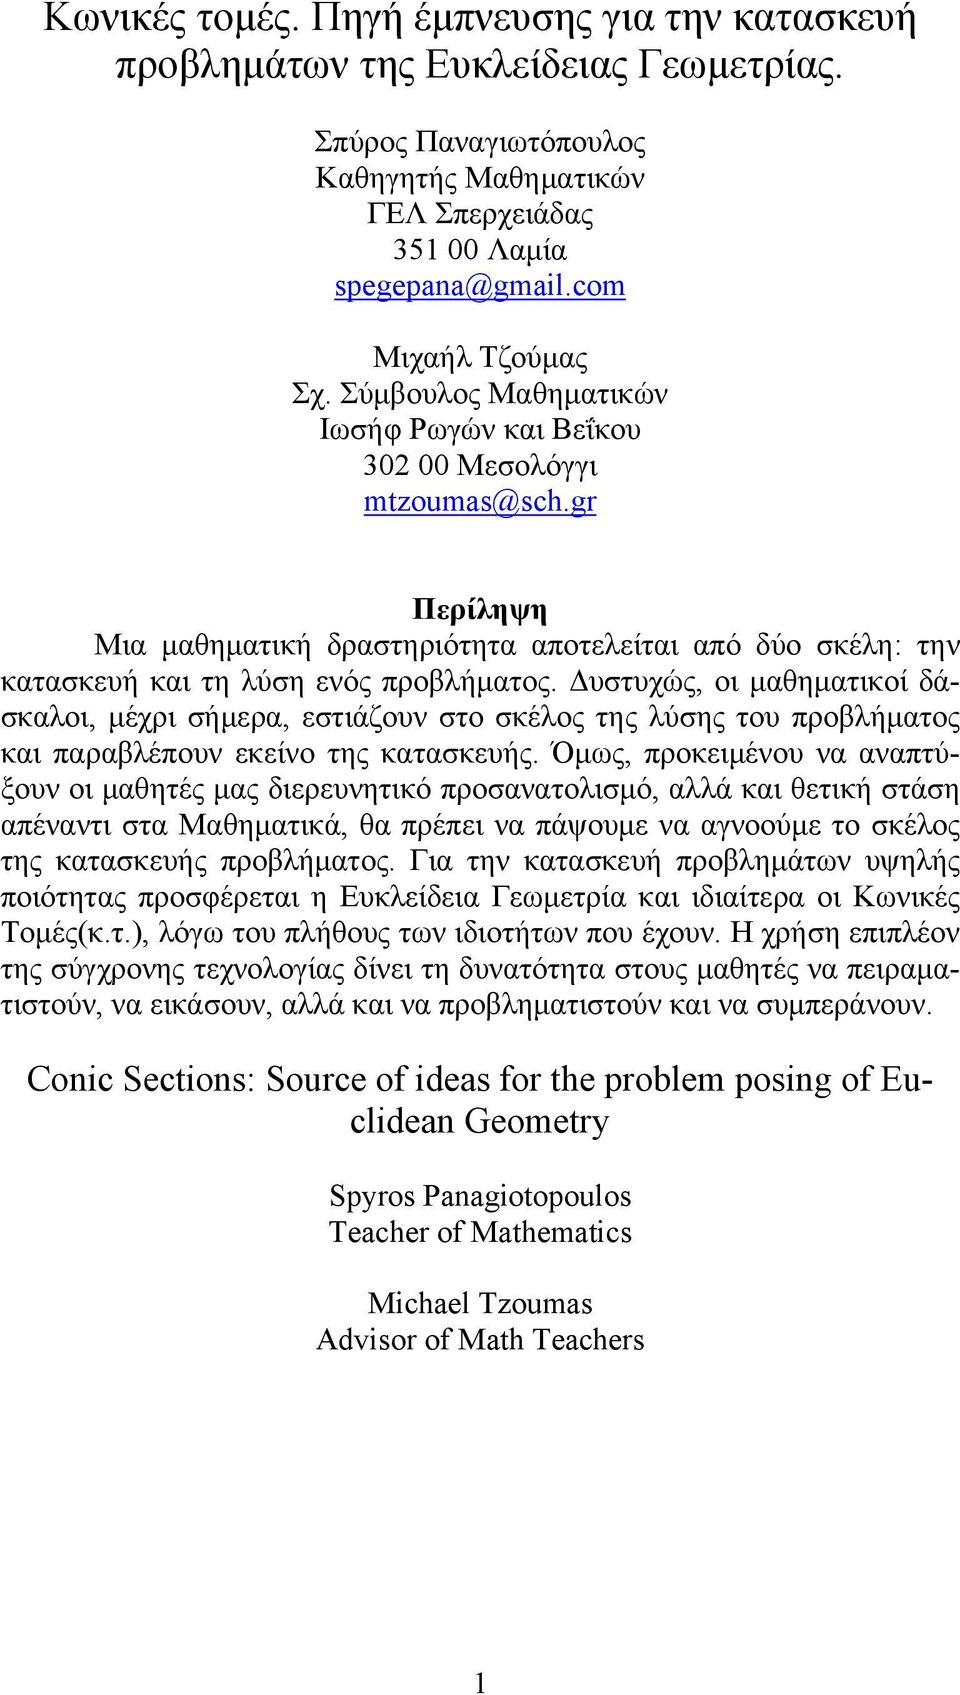 Δυστυχώς, οι μαθηματικοί δάσκαλοι, μέχρι σήμερα, εστιάζουν στο σκέλος της λύσης του προβλήματος και παραβλέπουν εκείνο της κατασκευής.